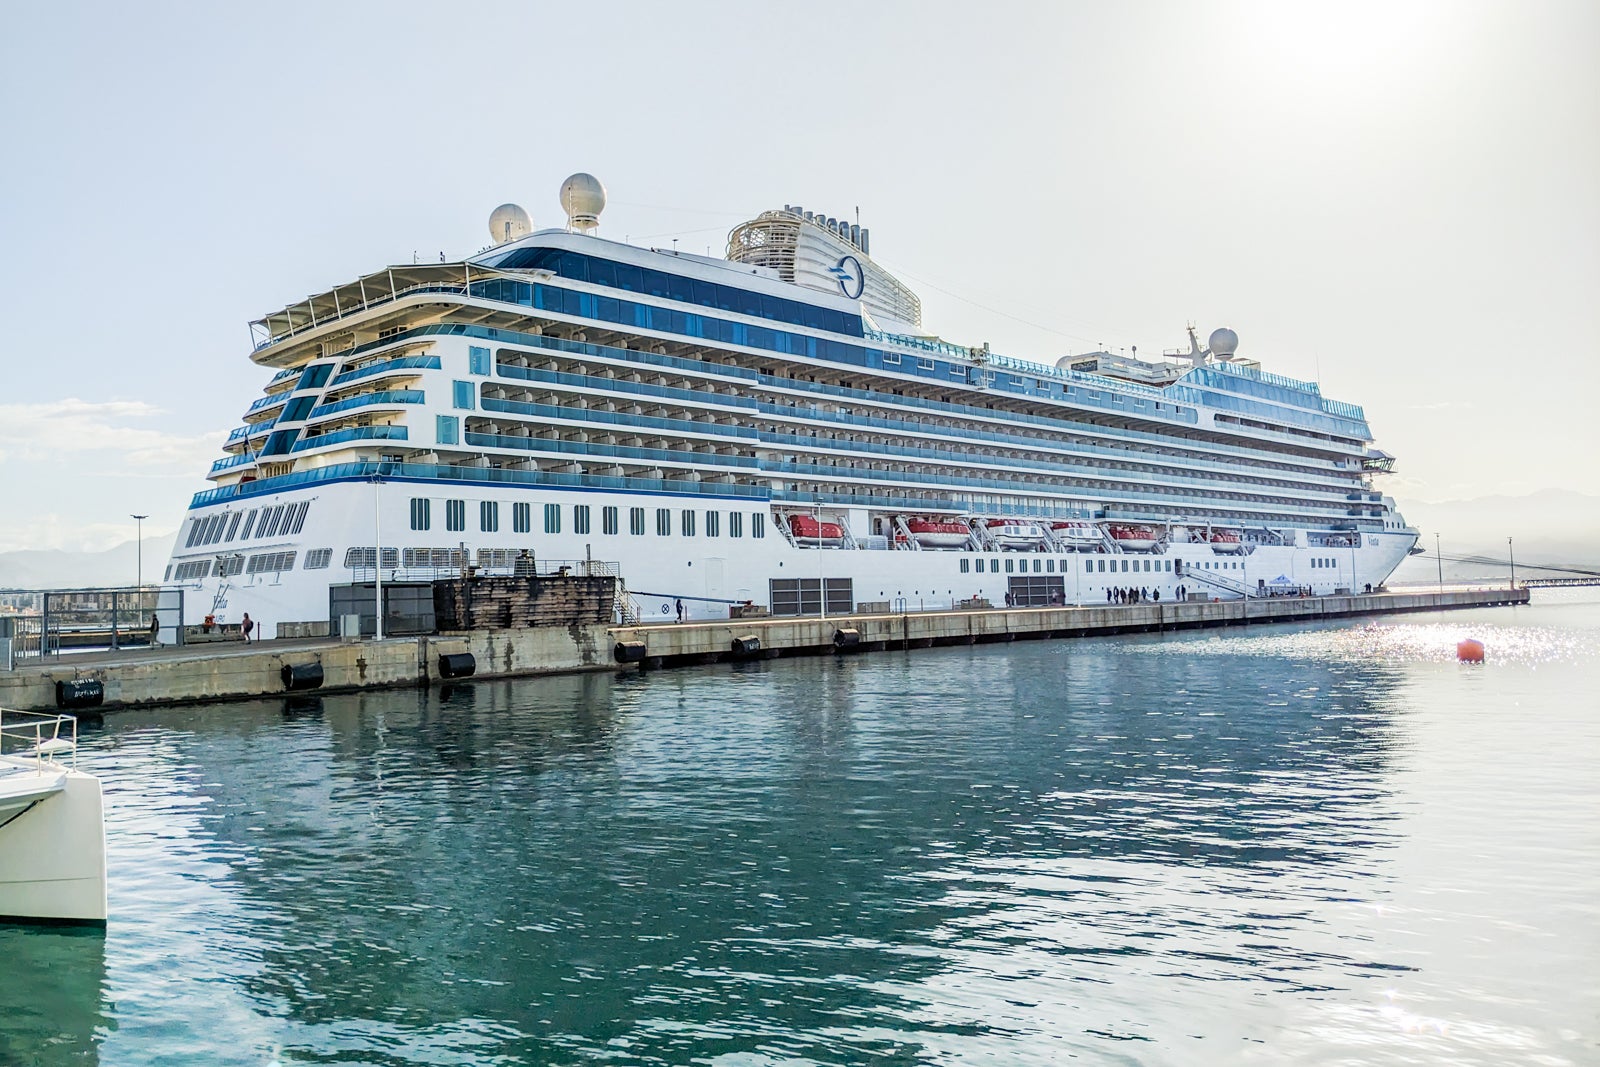 Vista cruise ship docked in Corsica.